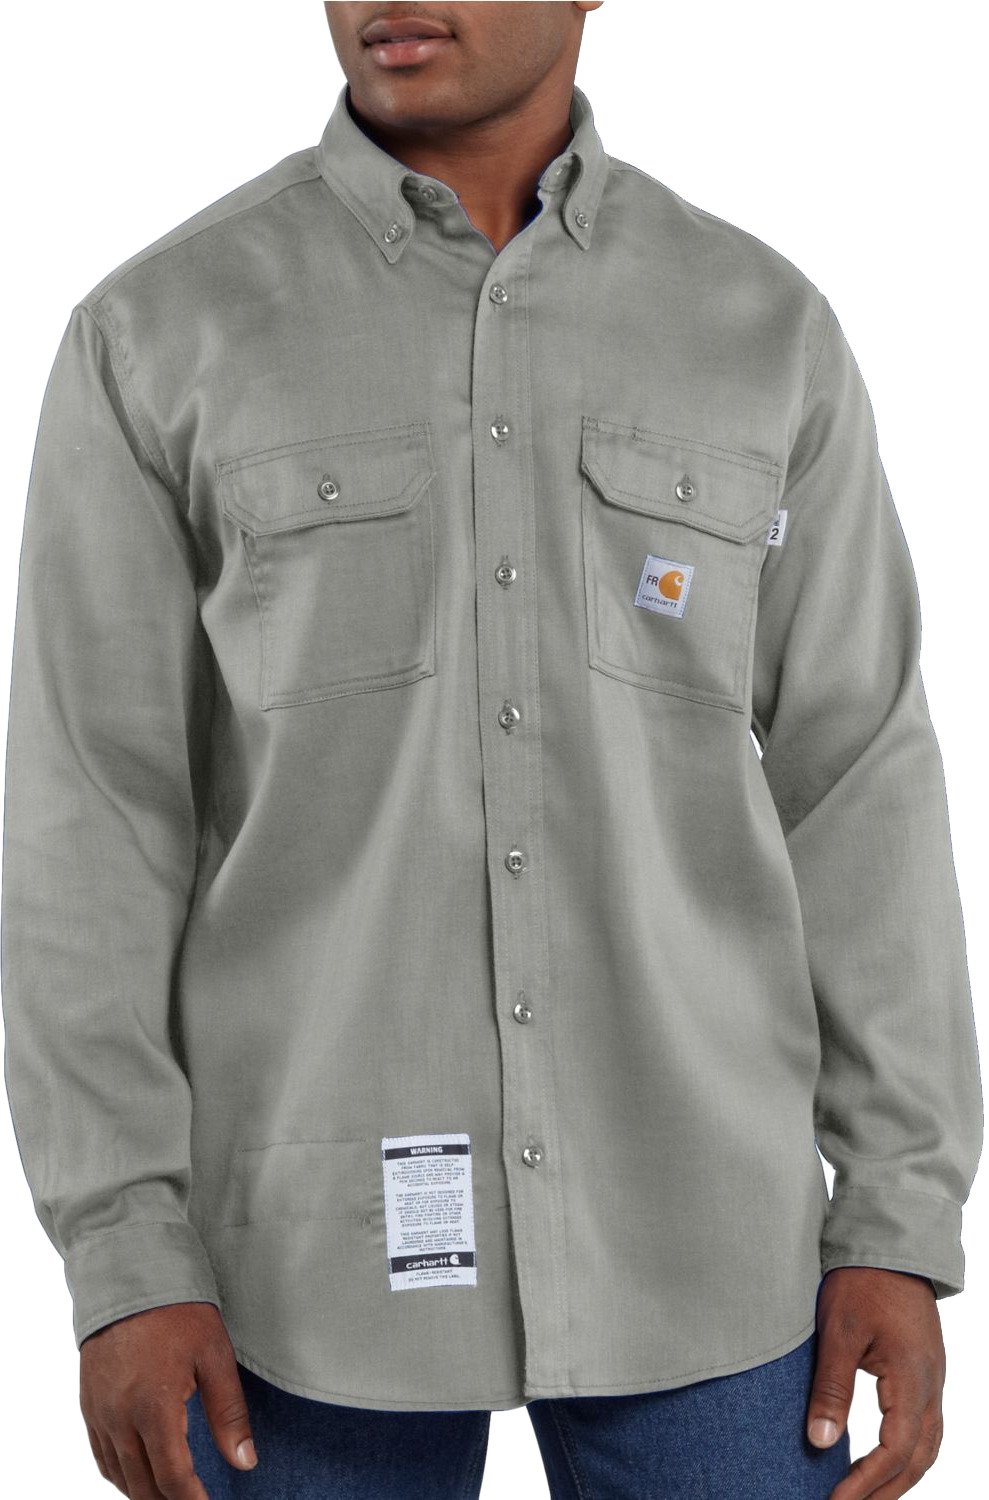 Carhartt Men's Flame-Resistant Work-Dry Lightweight Twill Shirt | Academy